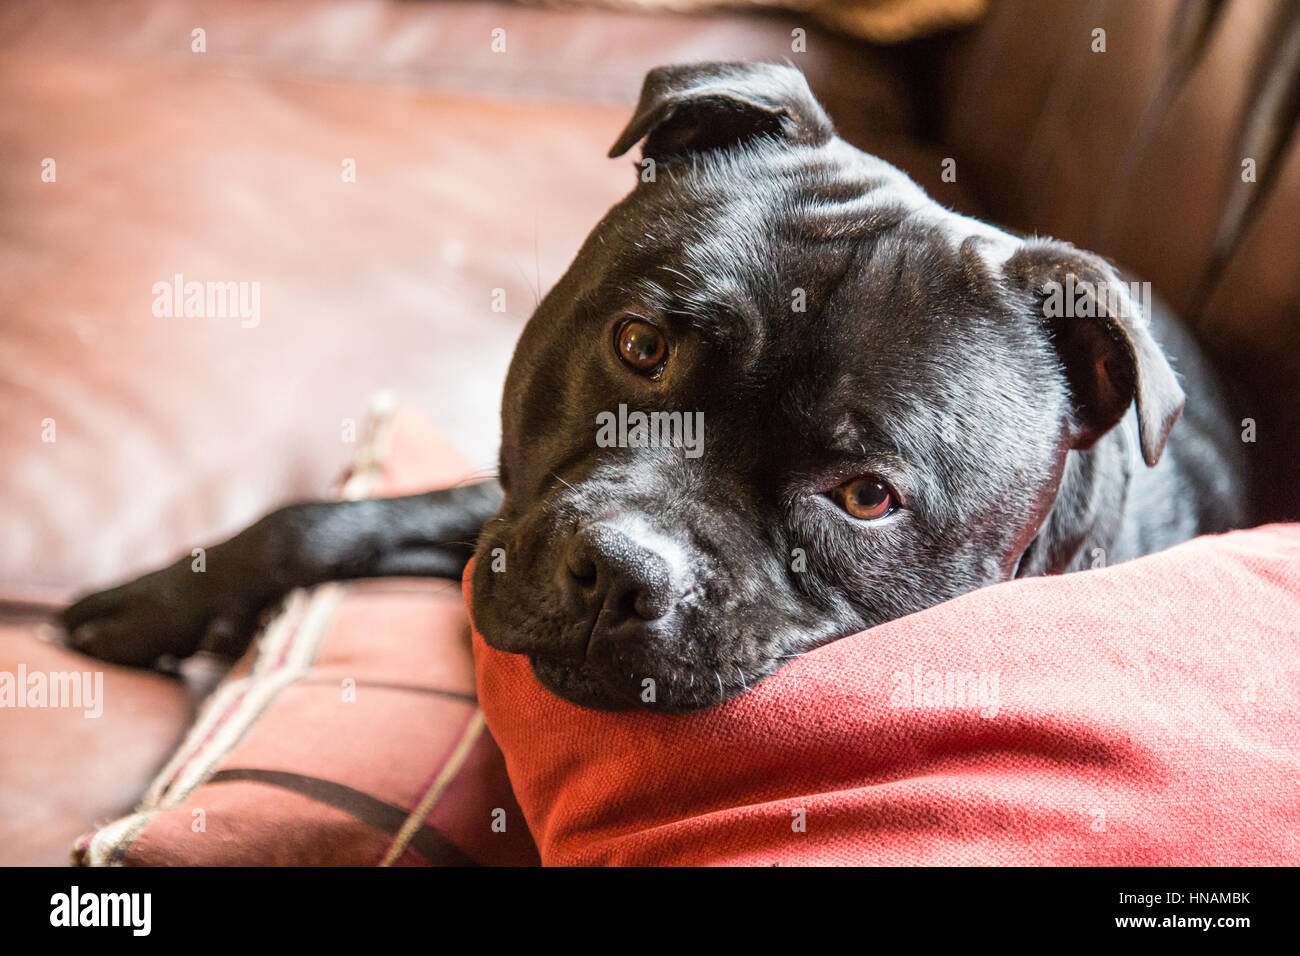 Ritratto di un molto carino staffordshire bull terrier cane con la testa in un cuscino di un divano in pelle cercando amorevolmente appellandosi alla fotocamera. Foto Stock